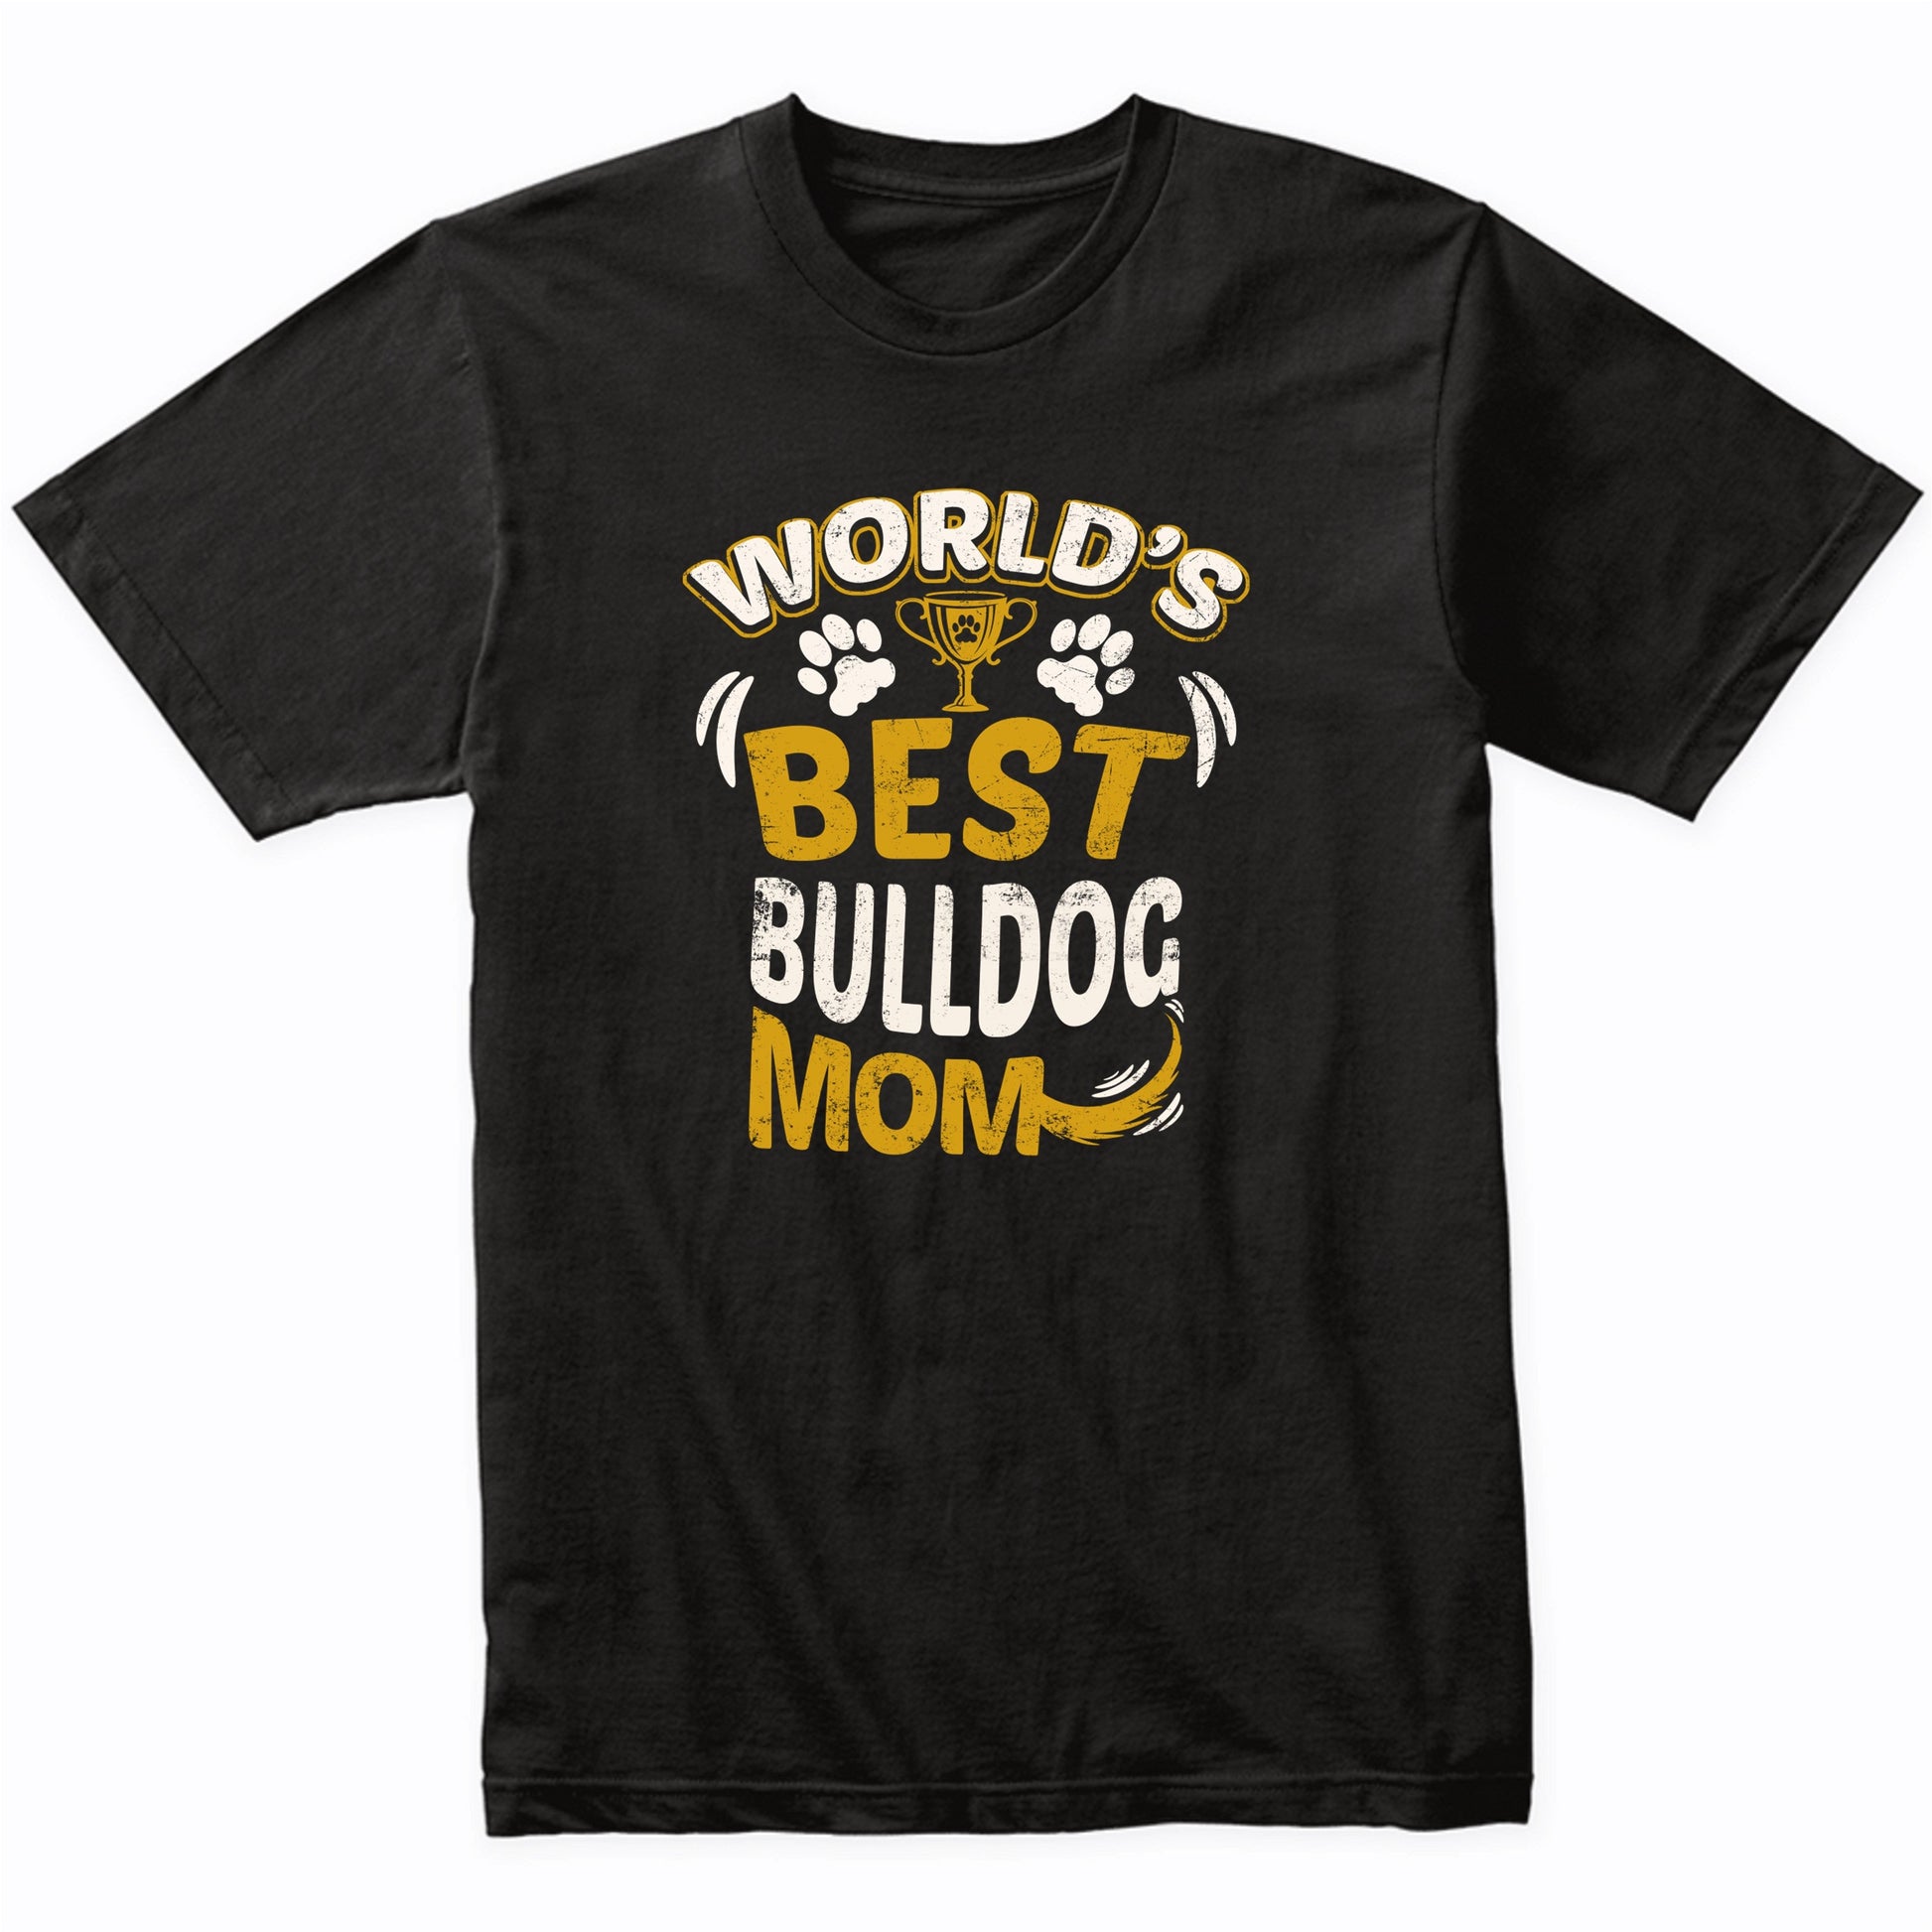 World's Best Bulldog Mom Graphic T-Shirt